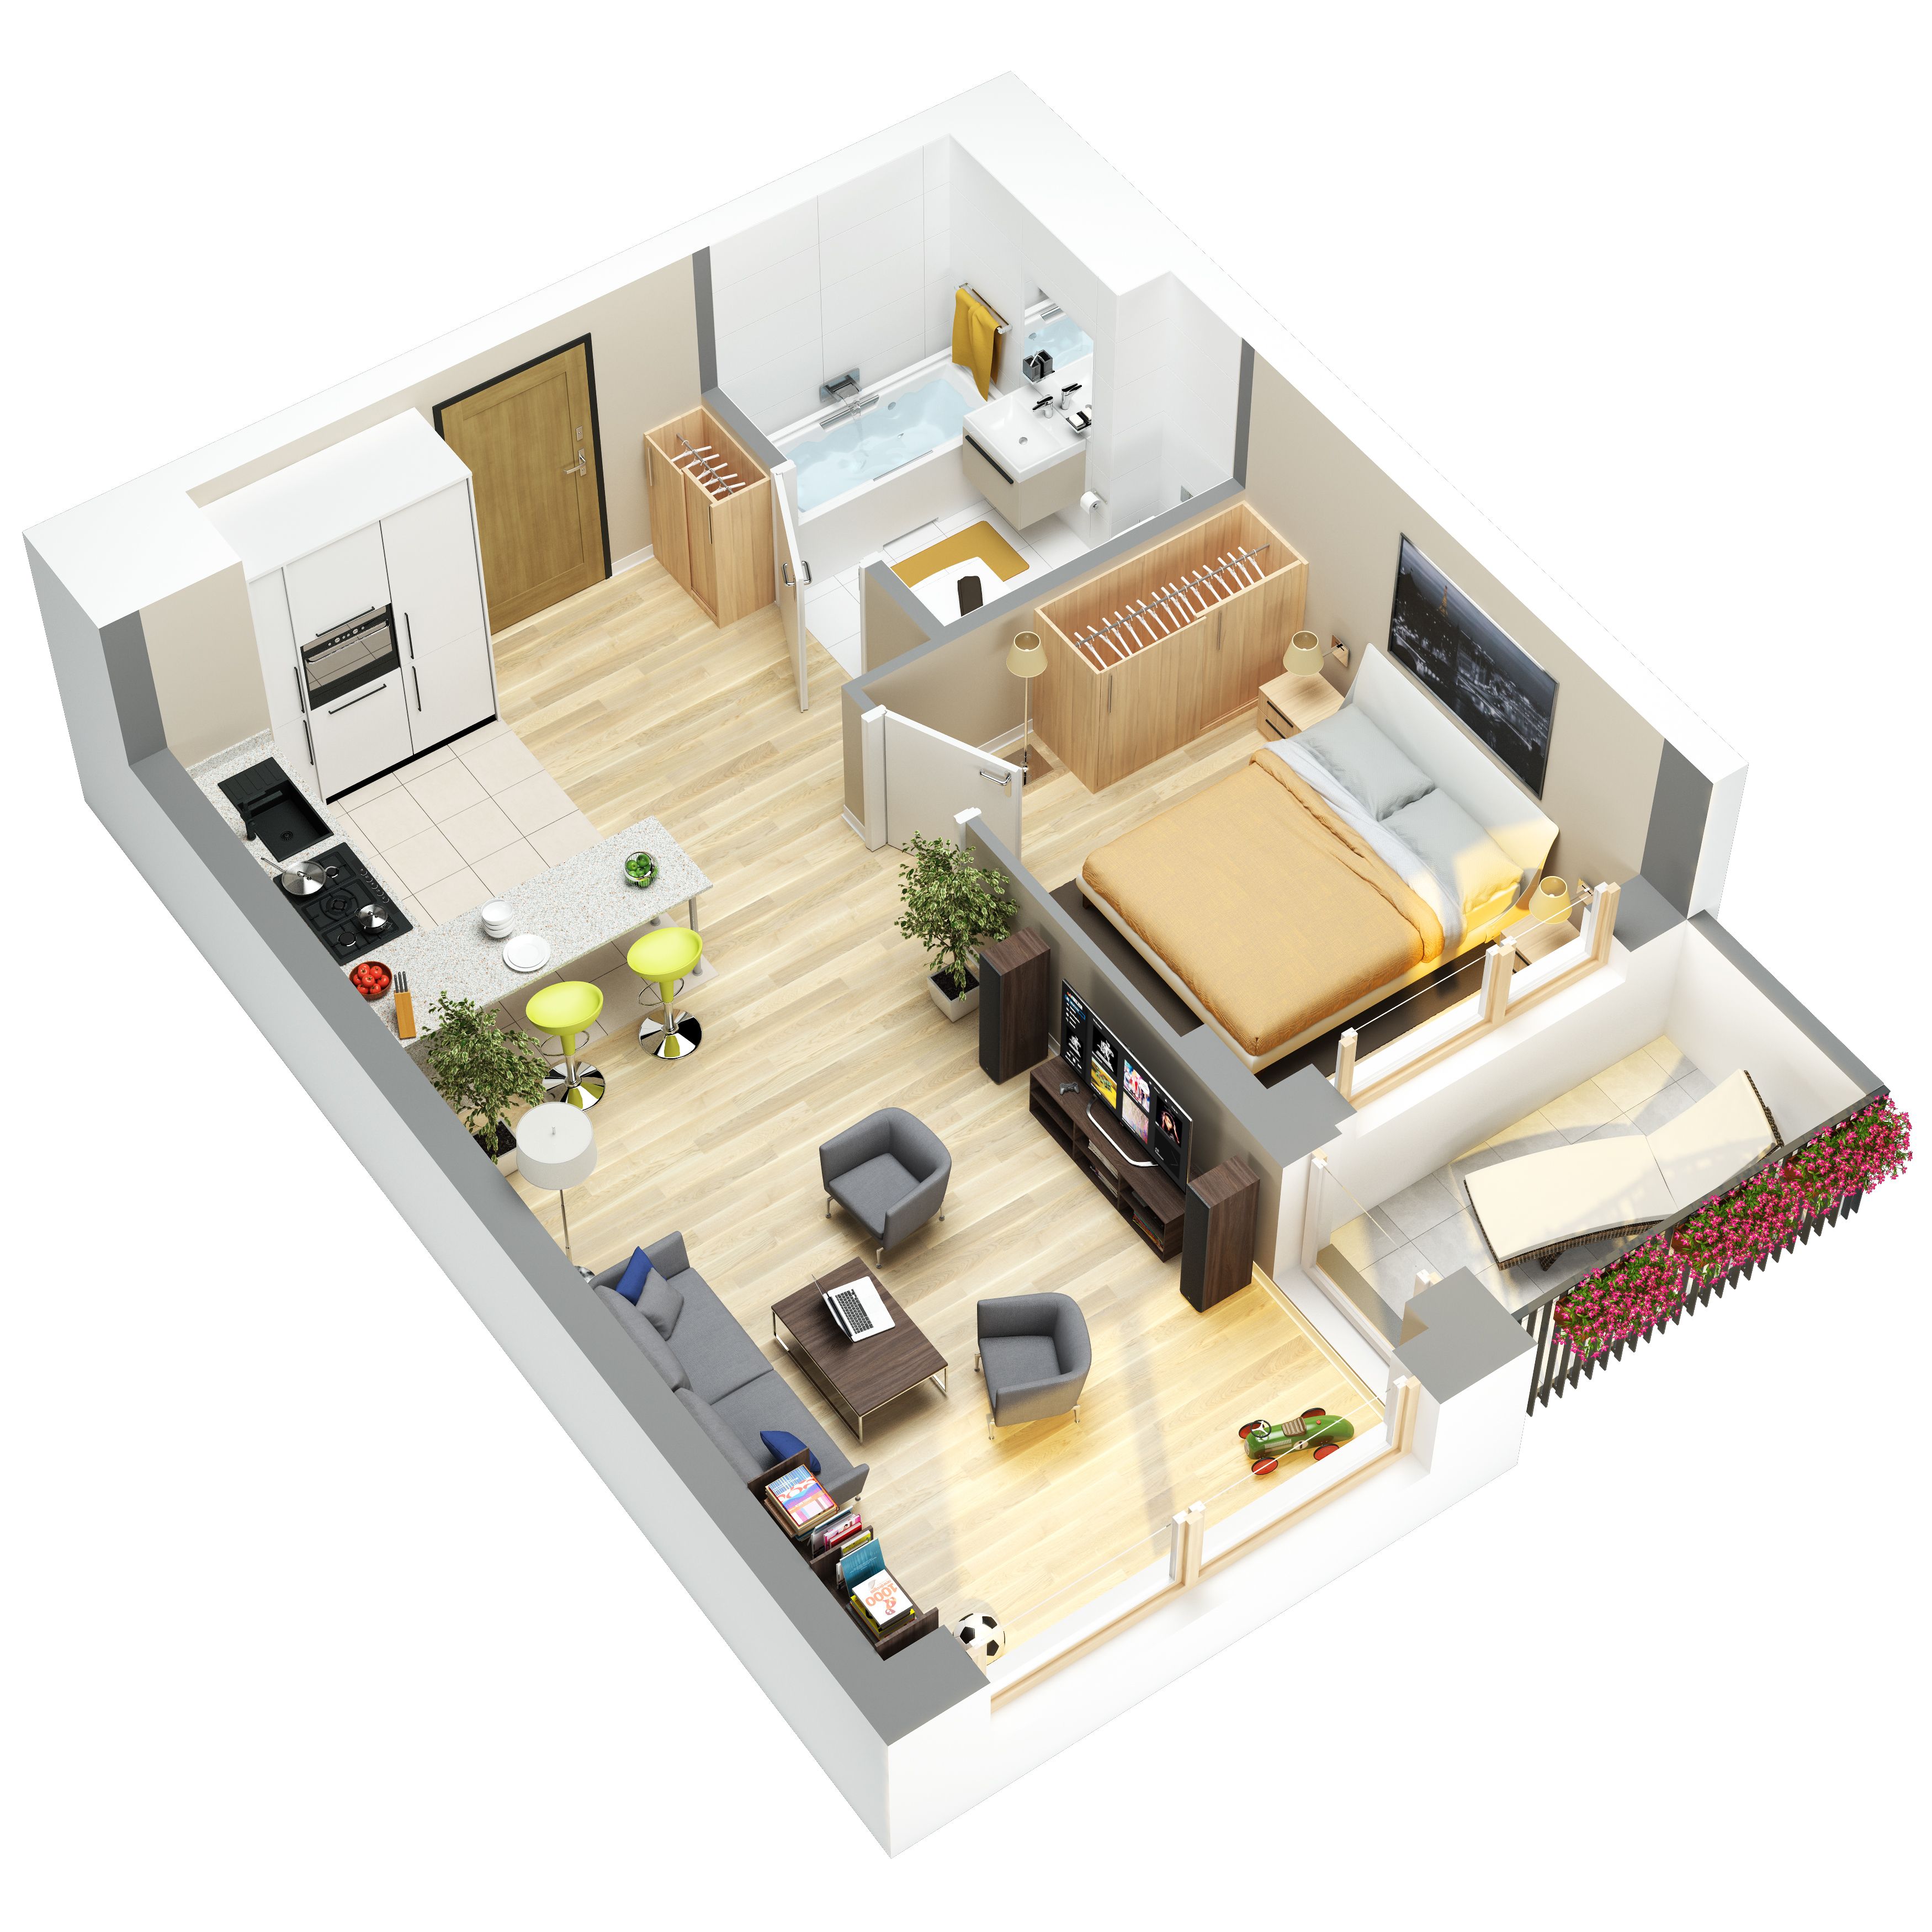 3D floor plans of flats. Bố trí mặt bằng nhà nhỏ, Căn hộ